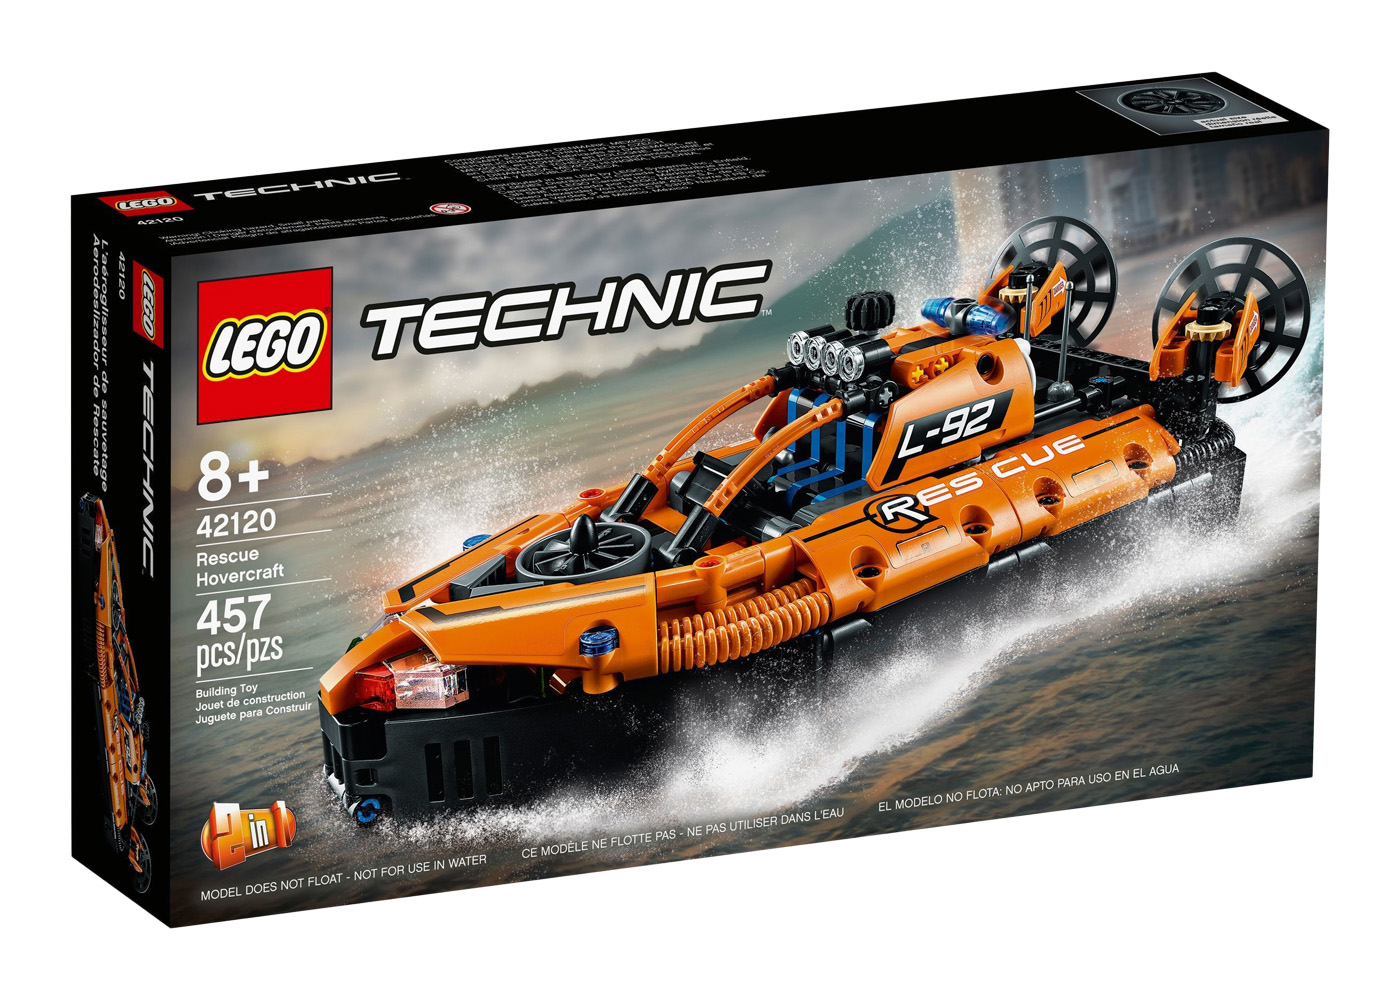 LEGO Technic Rescue Hovercraft Set 42120 - US